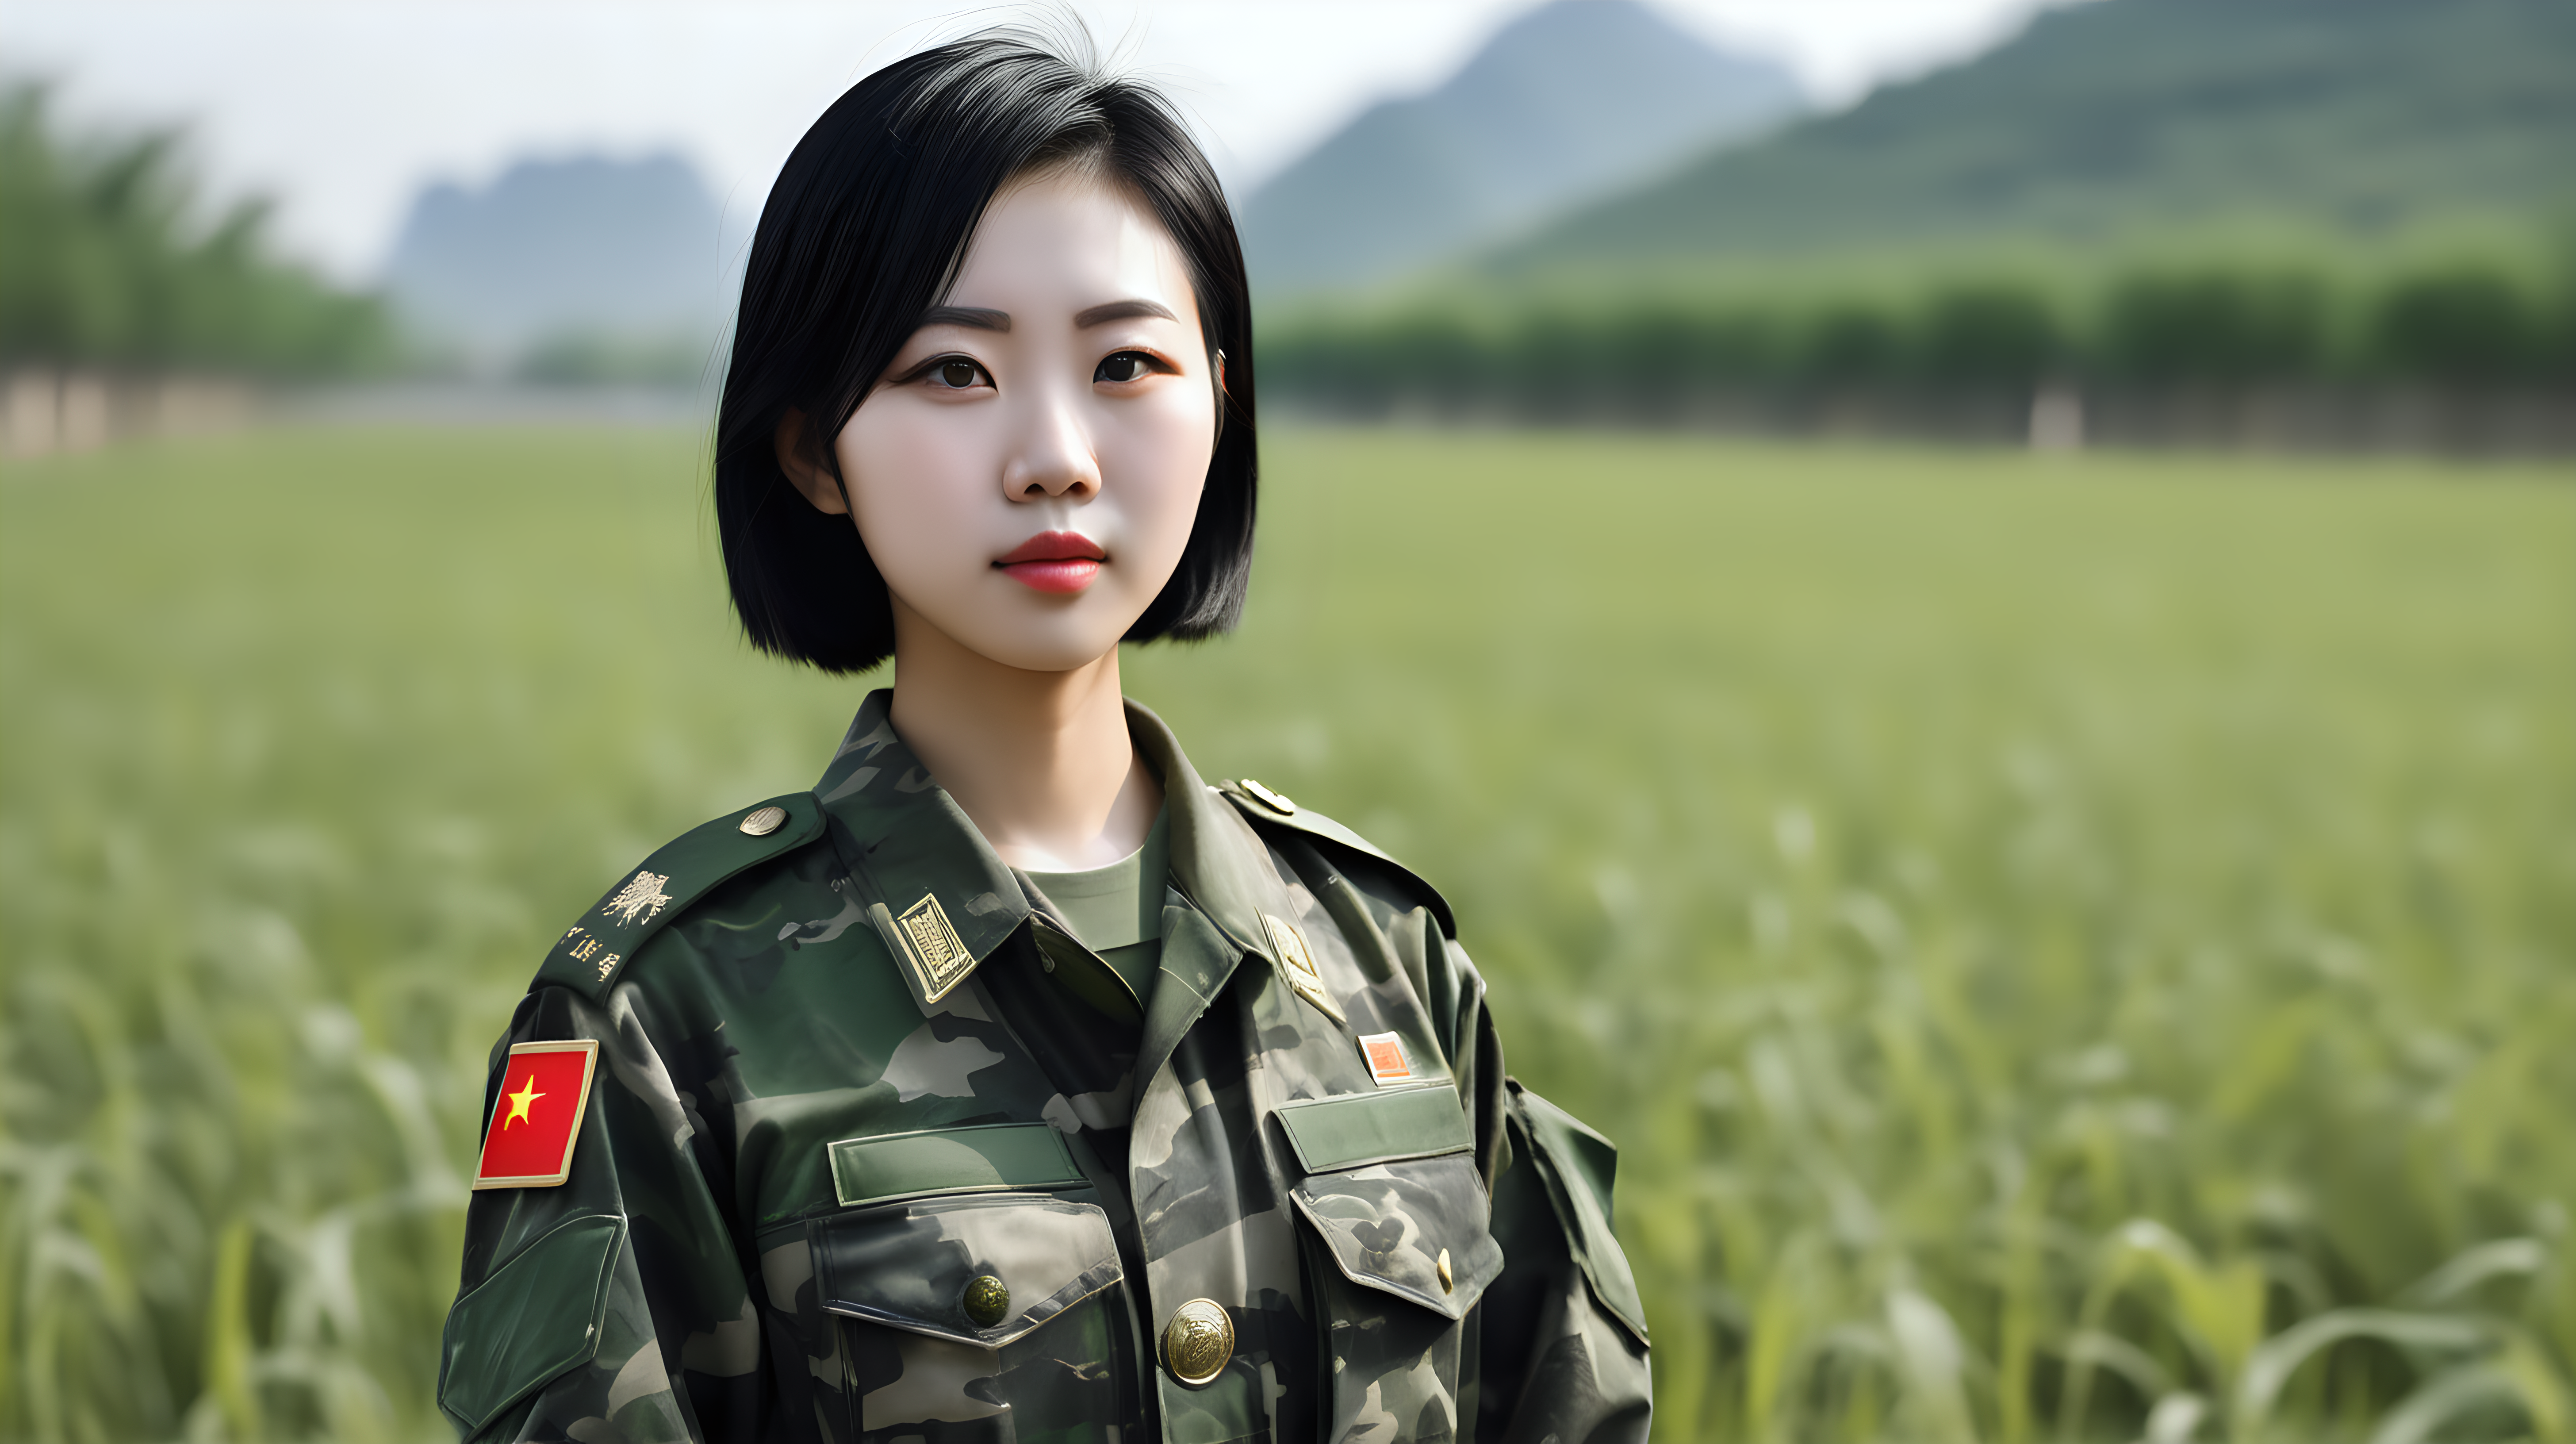 一名中国女兵
青年人
黑发
短发
迷彩服
站在野外